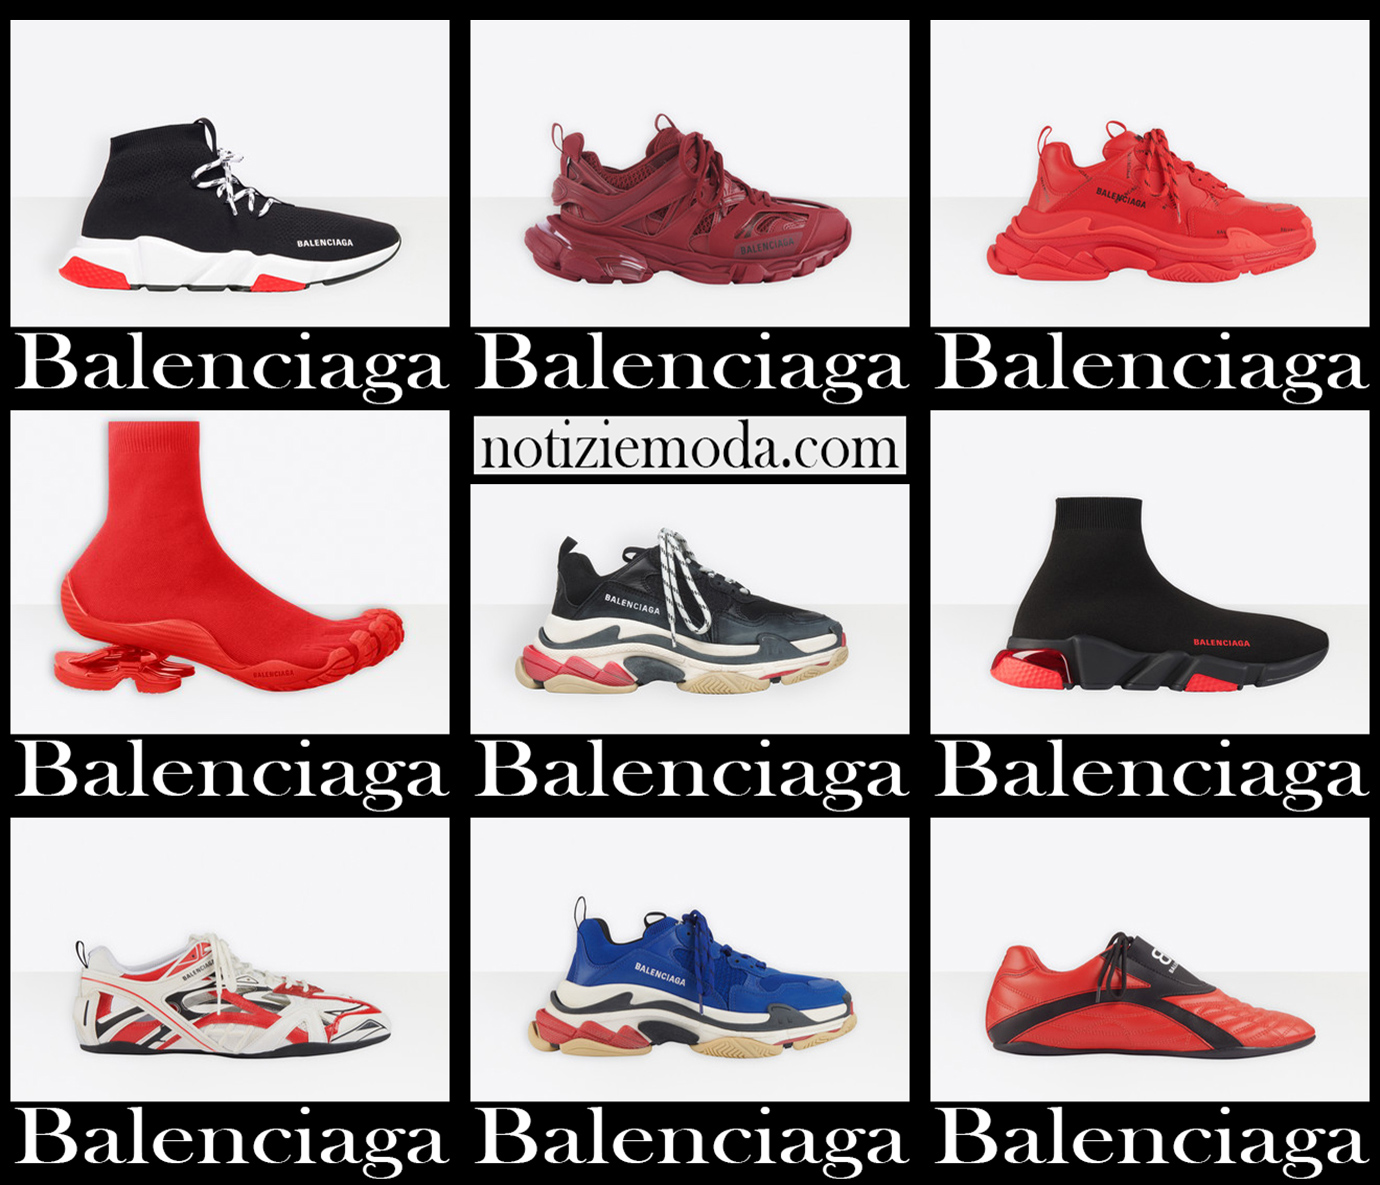 Nuovi arrivi sneakers Balenciaga 2021 calzature uomo